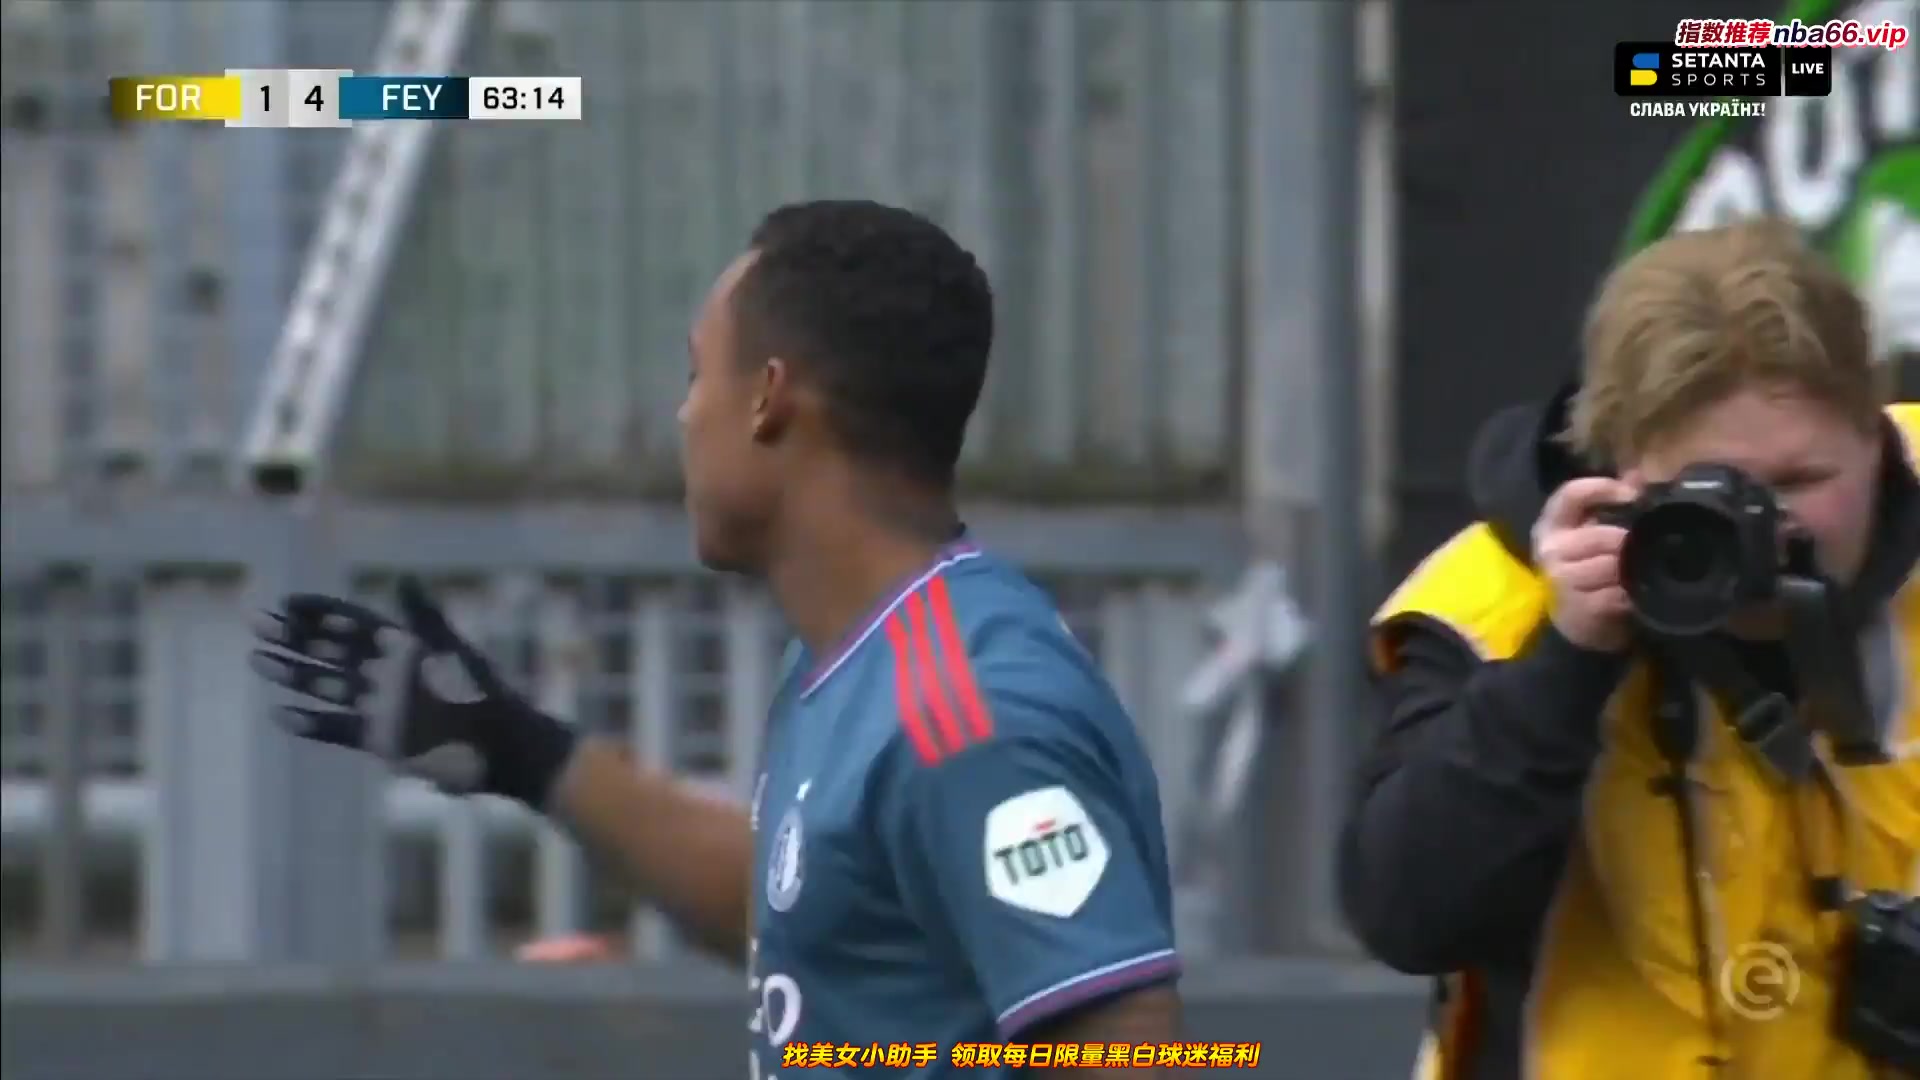 HOL D1 Fortuna Sittard Vs Feyenoord  Goal in 64 min, Score 1:4